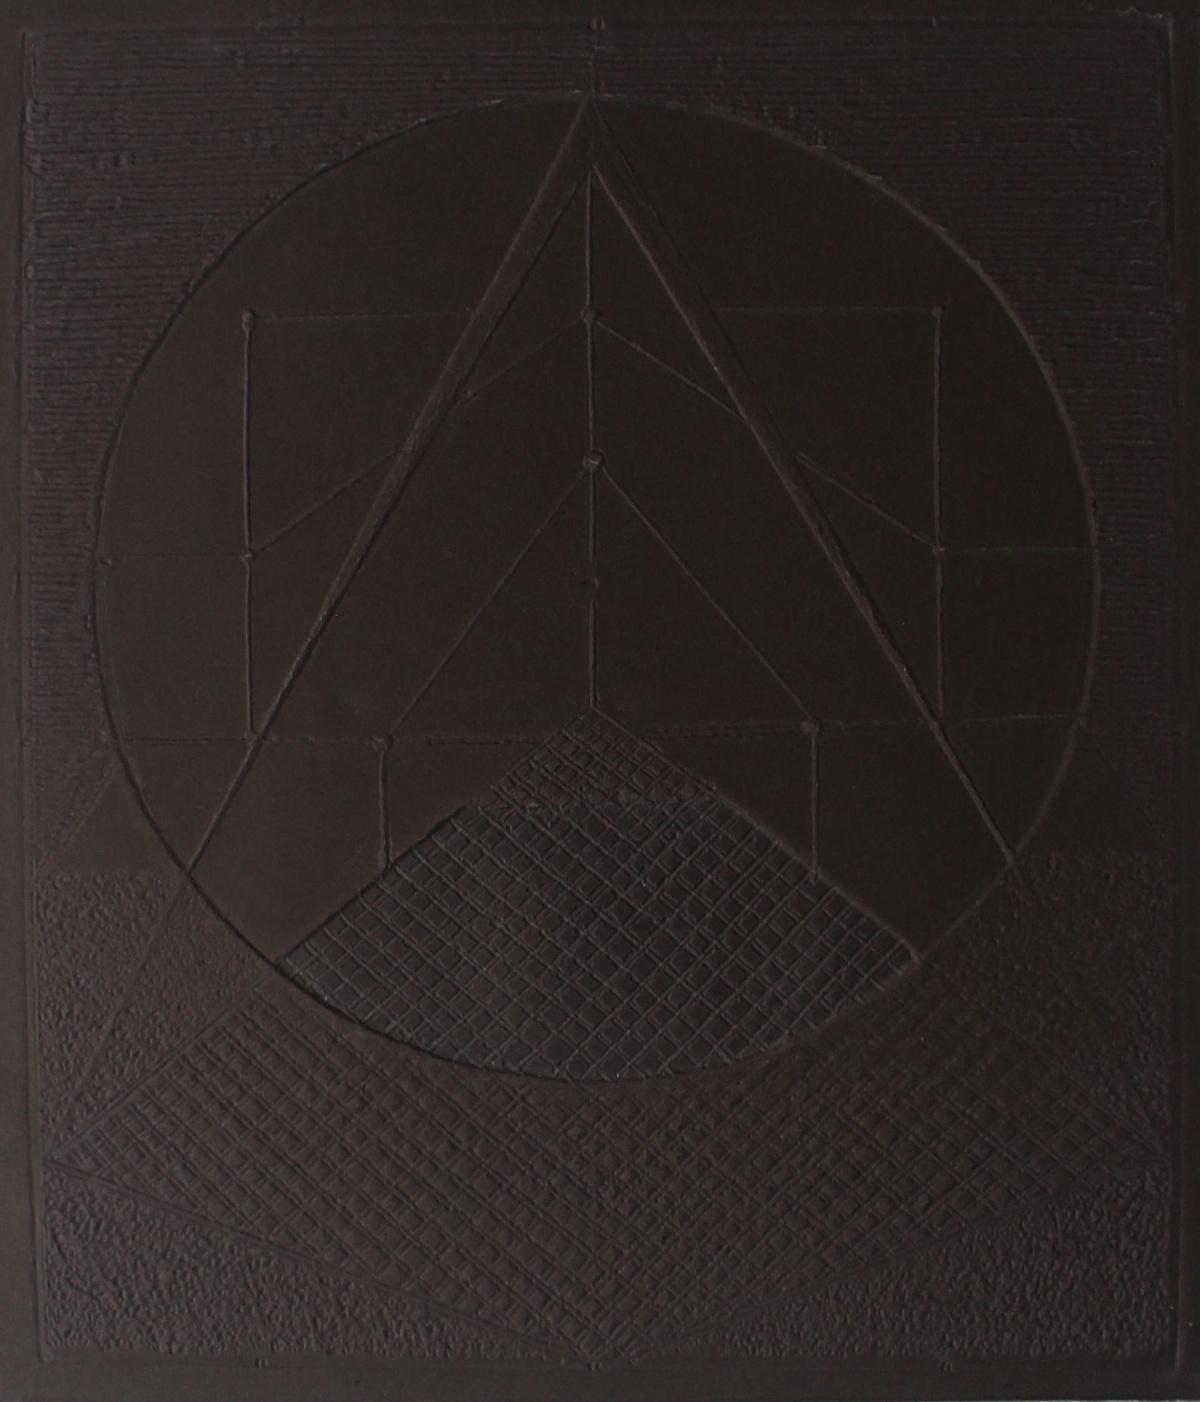 Relief I - XXIe siècle, graphisme abstrait contemporain, formes géométriques,  - Noir Abstract Print par Ryszard Gieryszewski